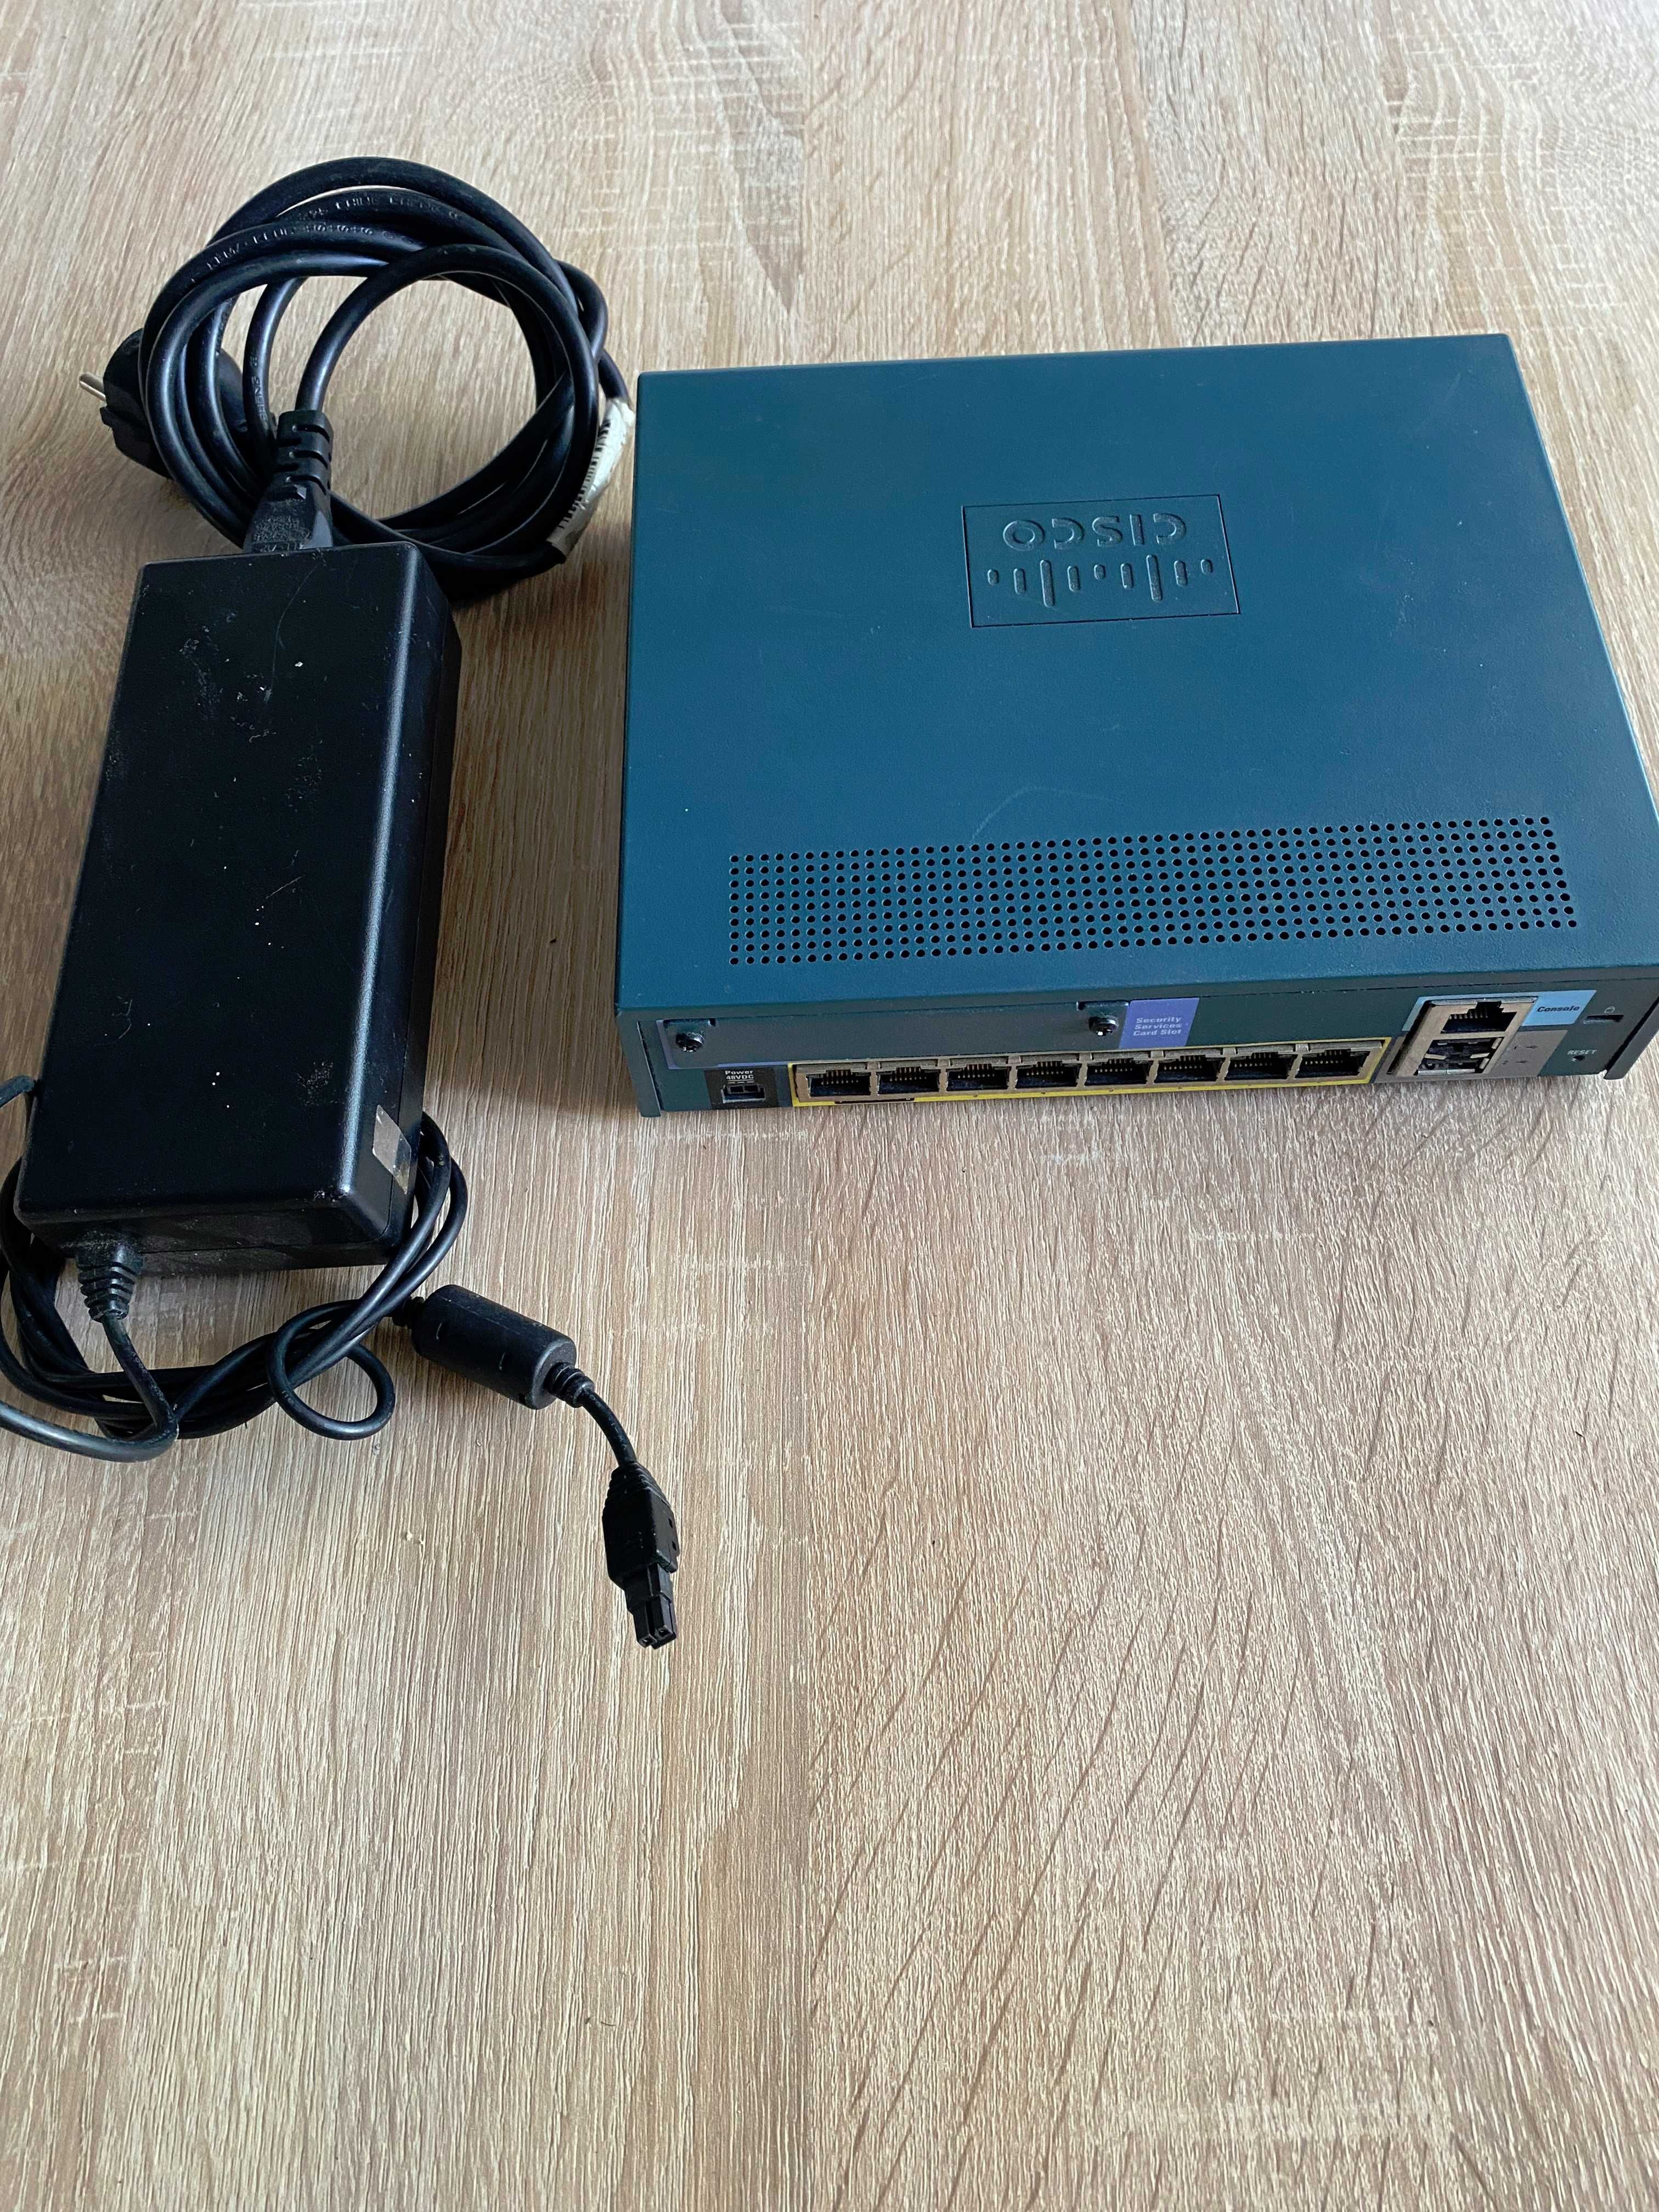 Cisco ASA 5505 firewall/router